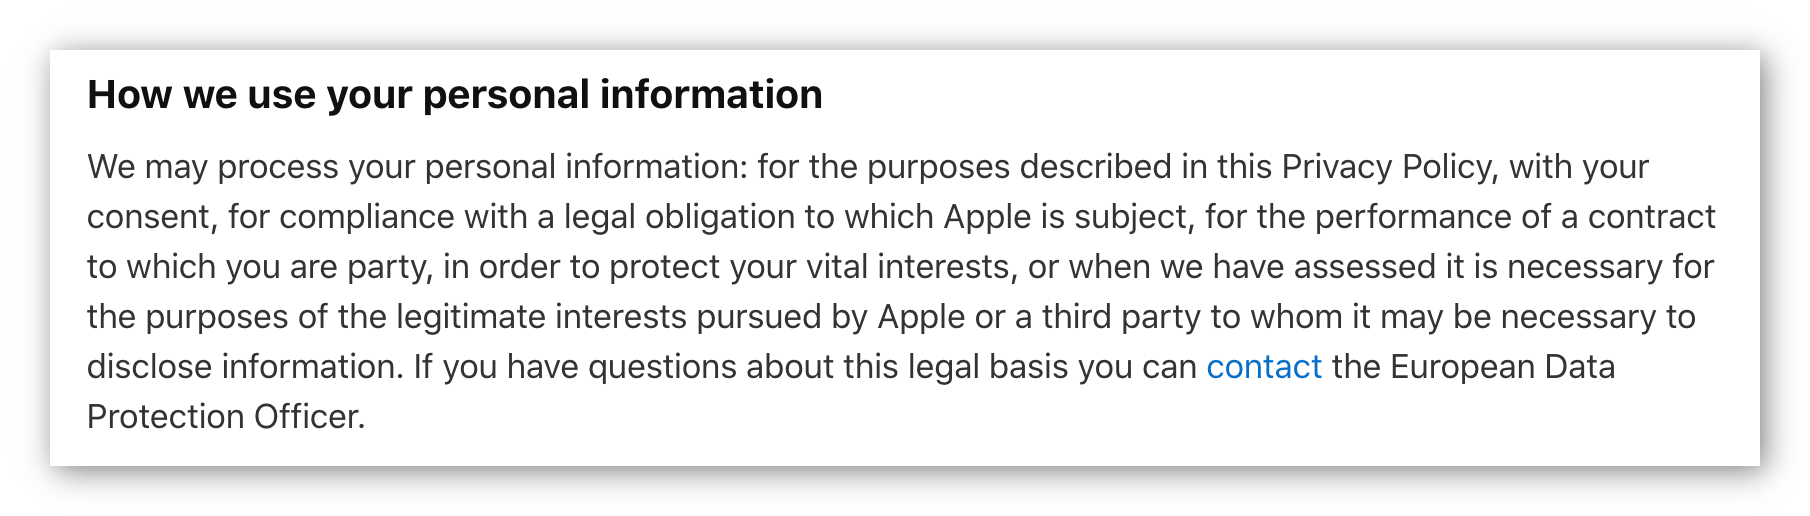 צילום מסך של מדיניות הפרטיות של אפל